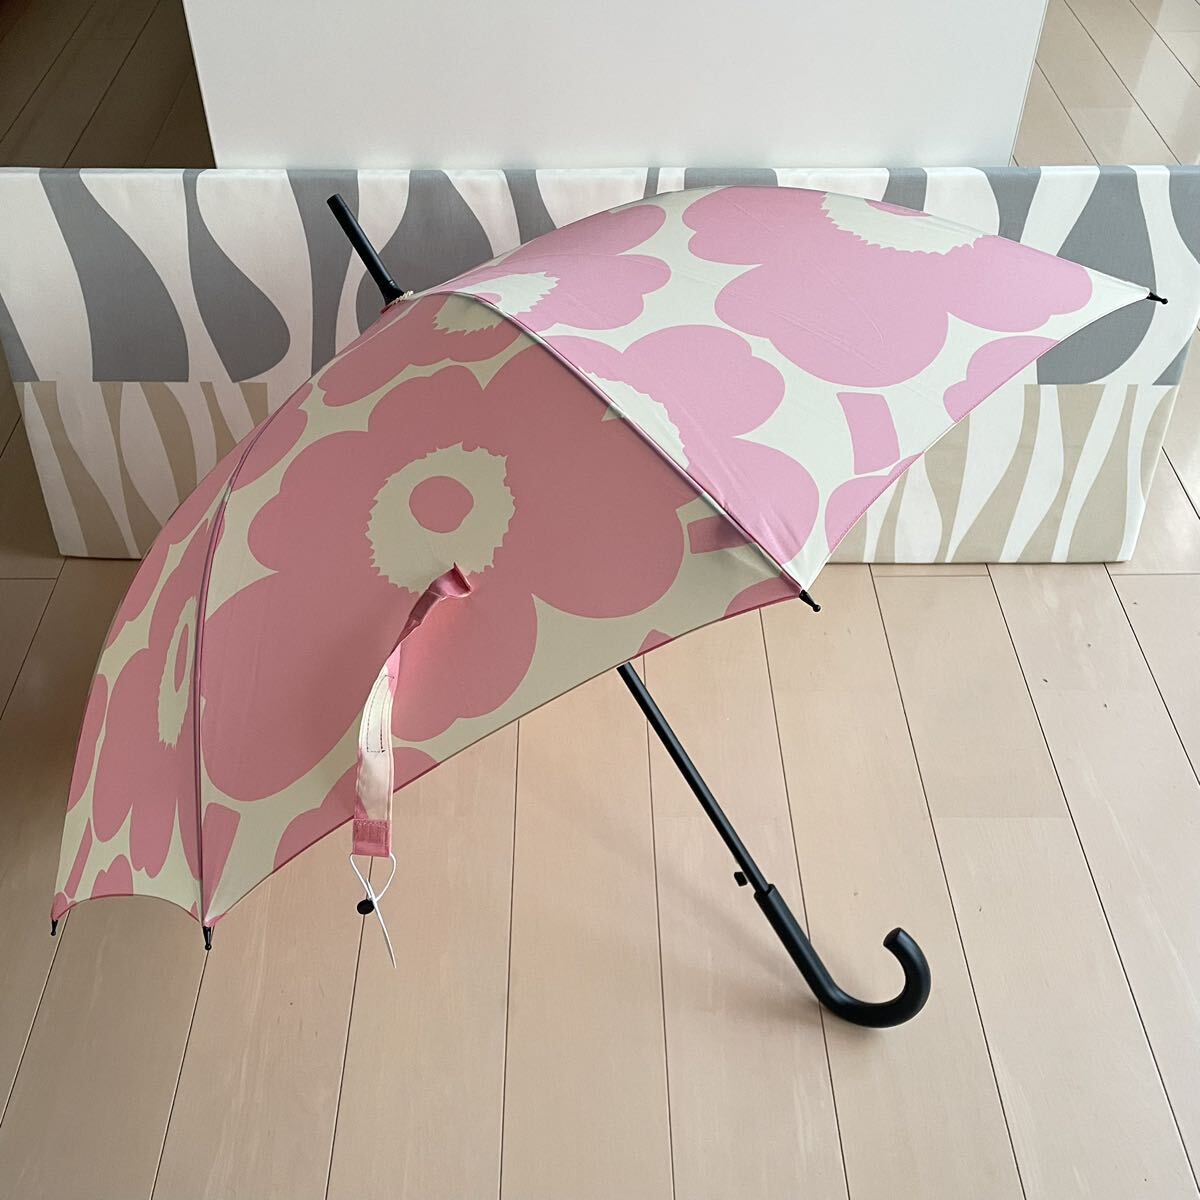  новый товар marimekko Stick Pieni Unikko Marimekko длинный зонт розовый одним движением 